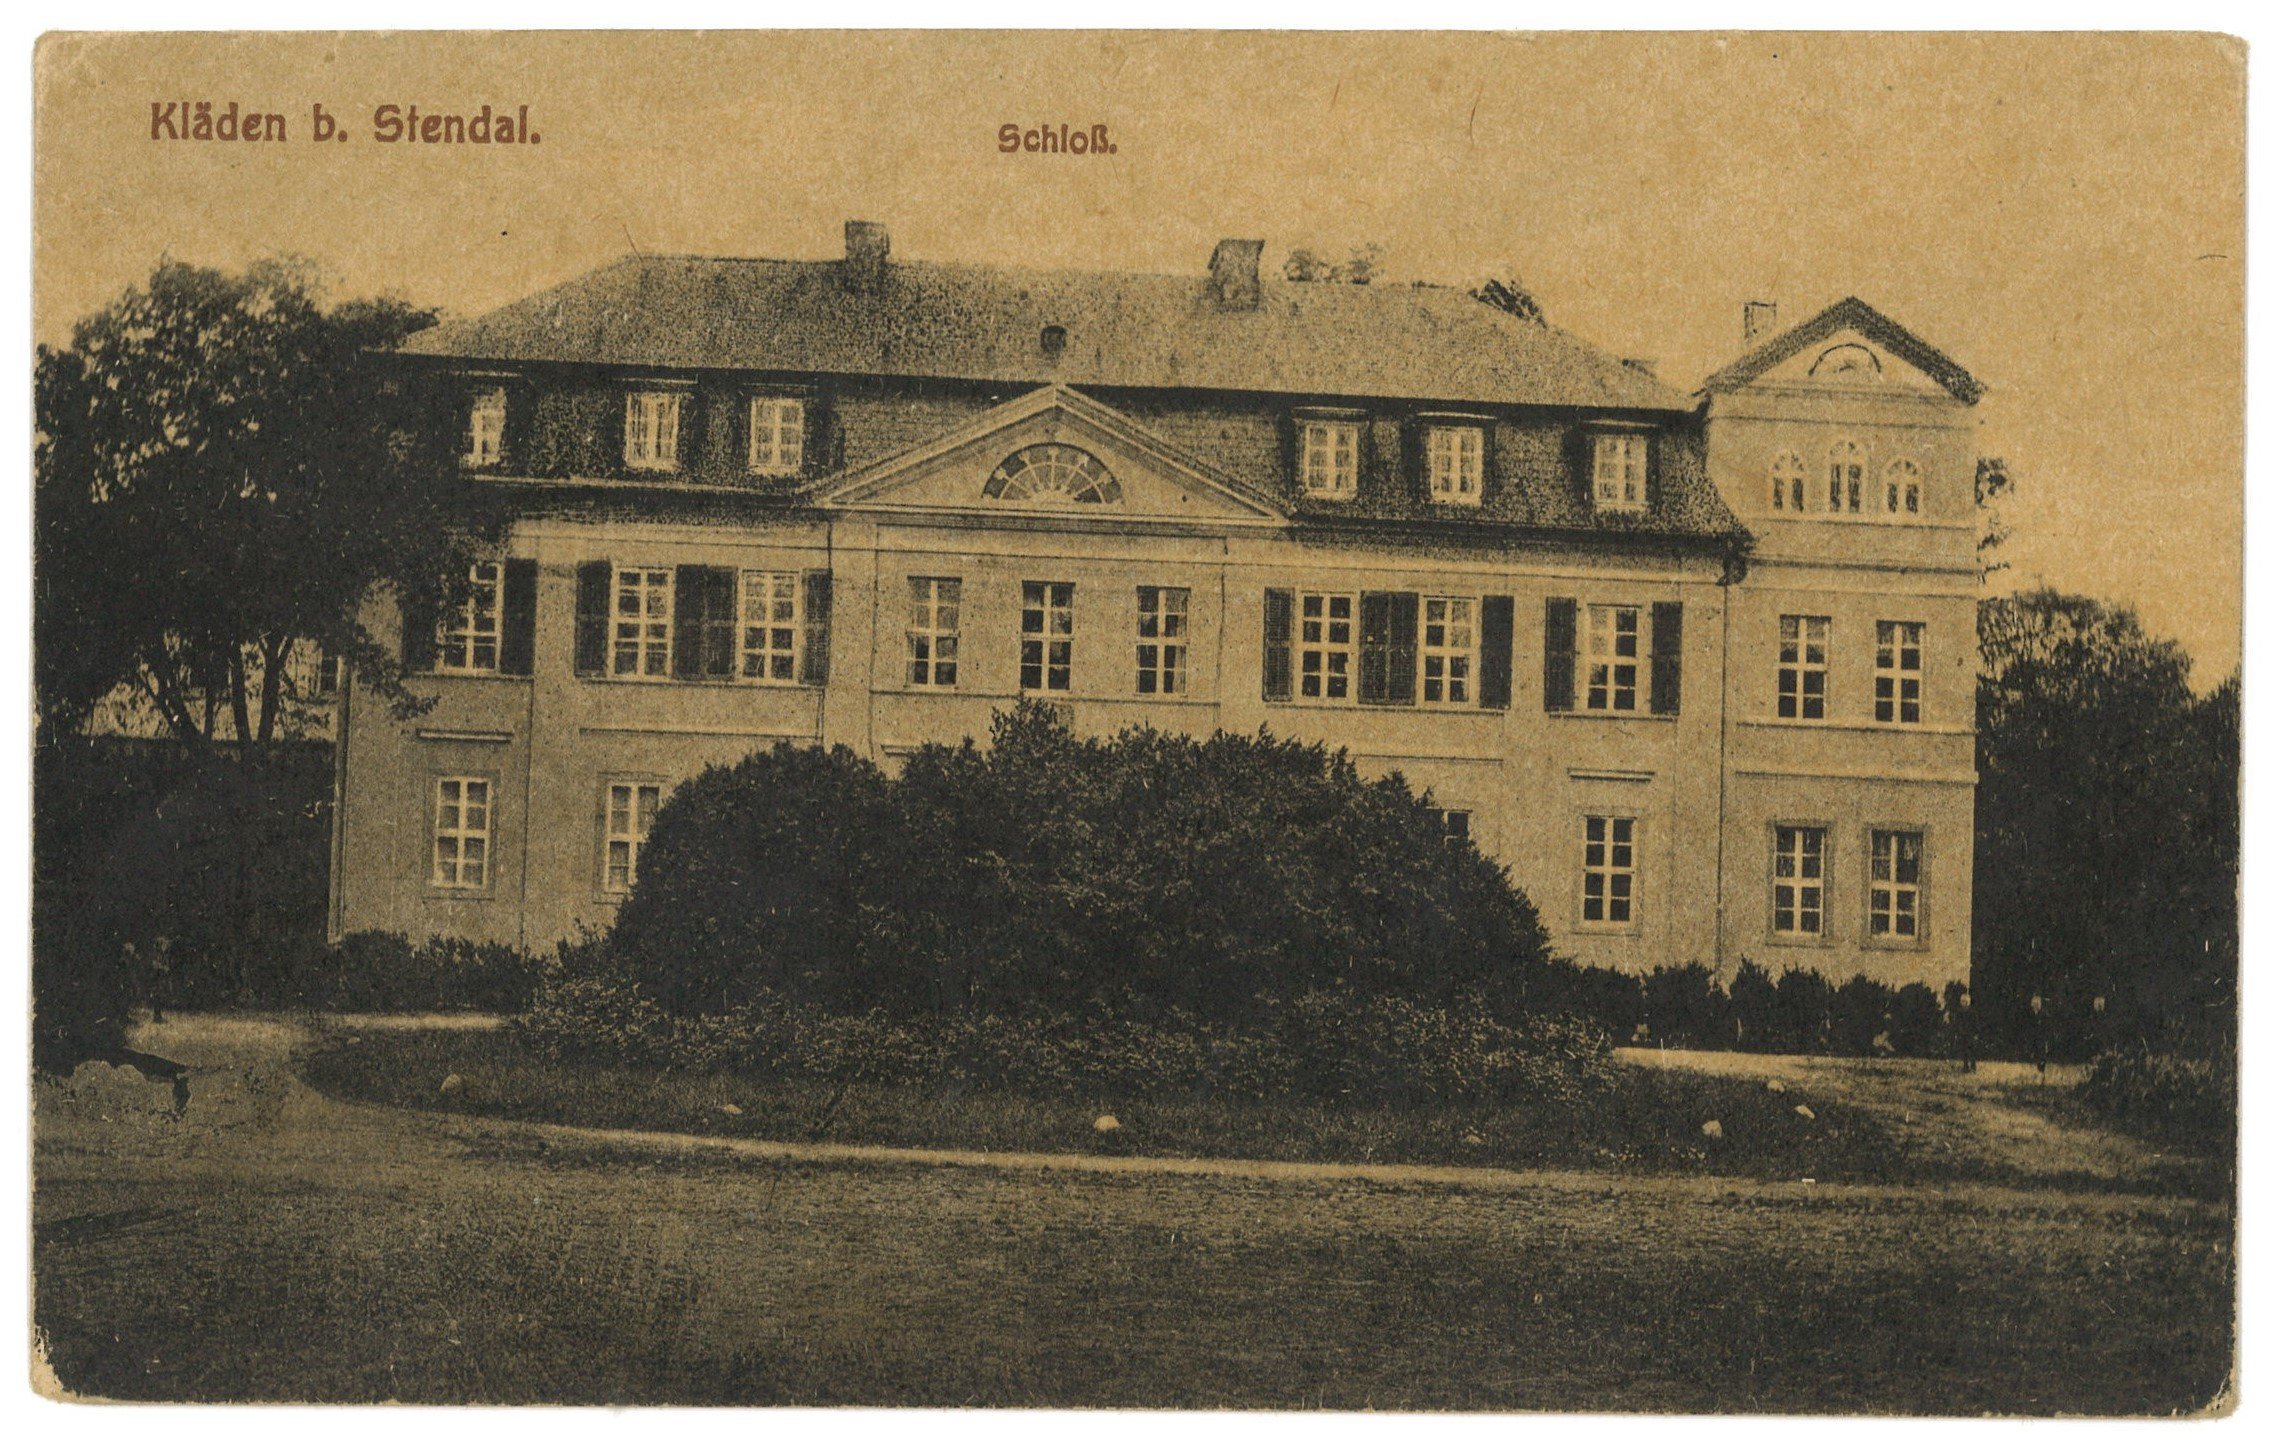 Kläden bei Stendal: Herrenhaus, Hofseite (Landesgeschichtliche Vereinigung für die Mark Brandenburg e.V. CC BY)